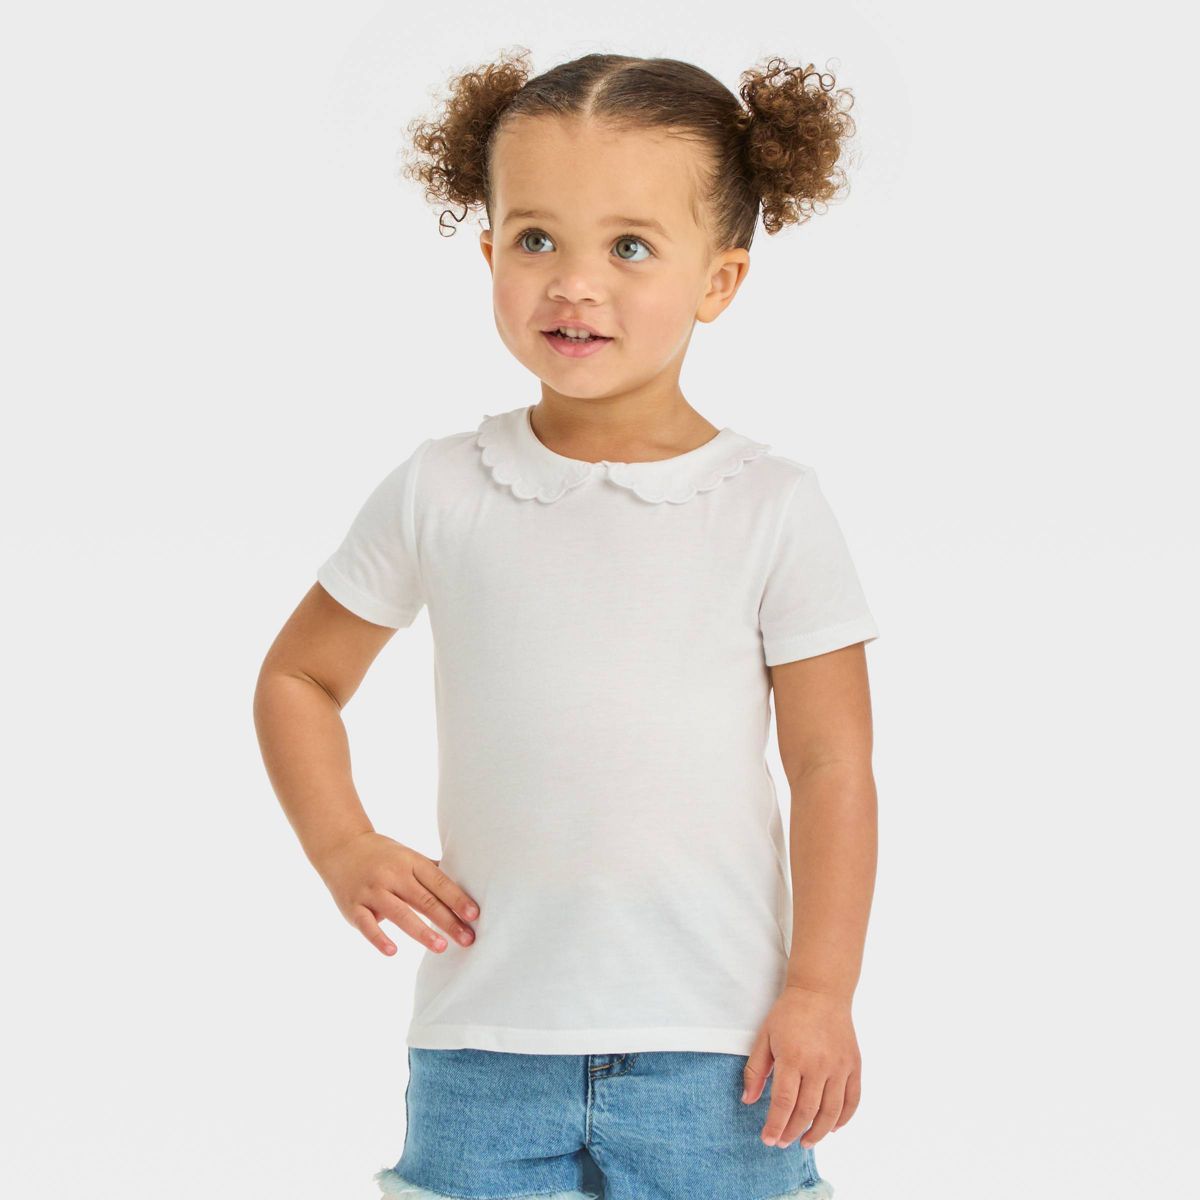 OshKosh B'gosh Toddler Girls' Peter Pan Short Sleeve Top - White | Target